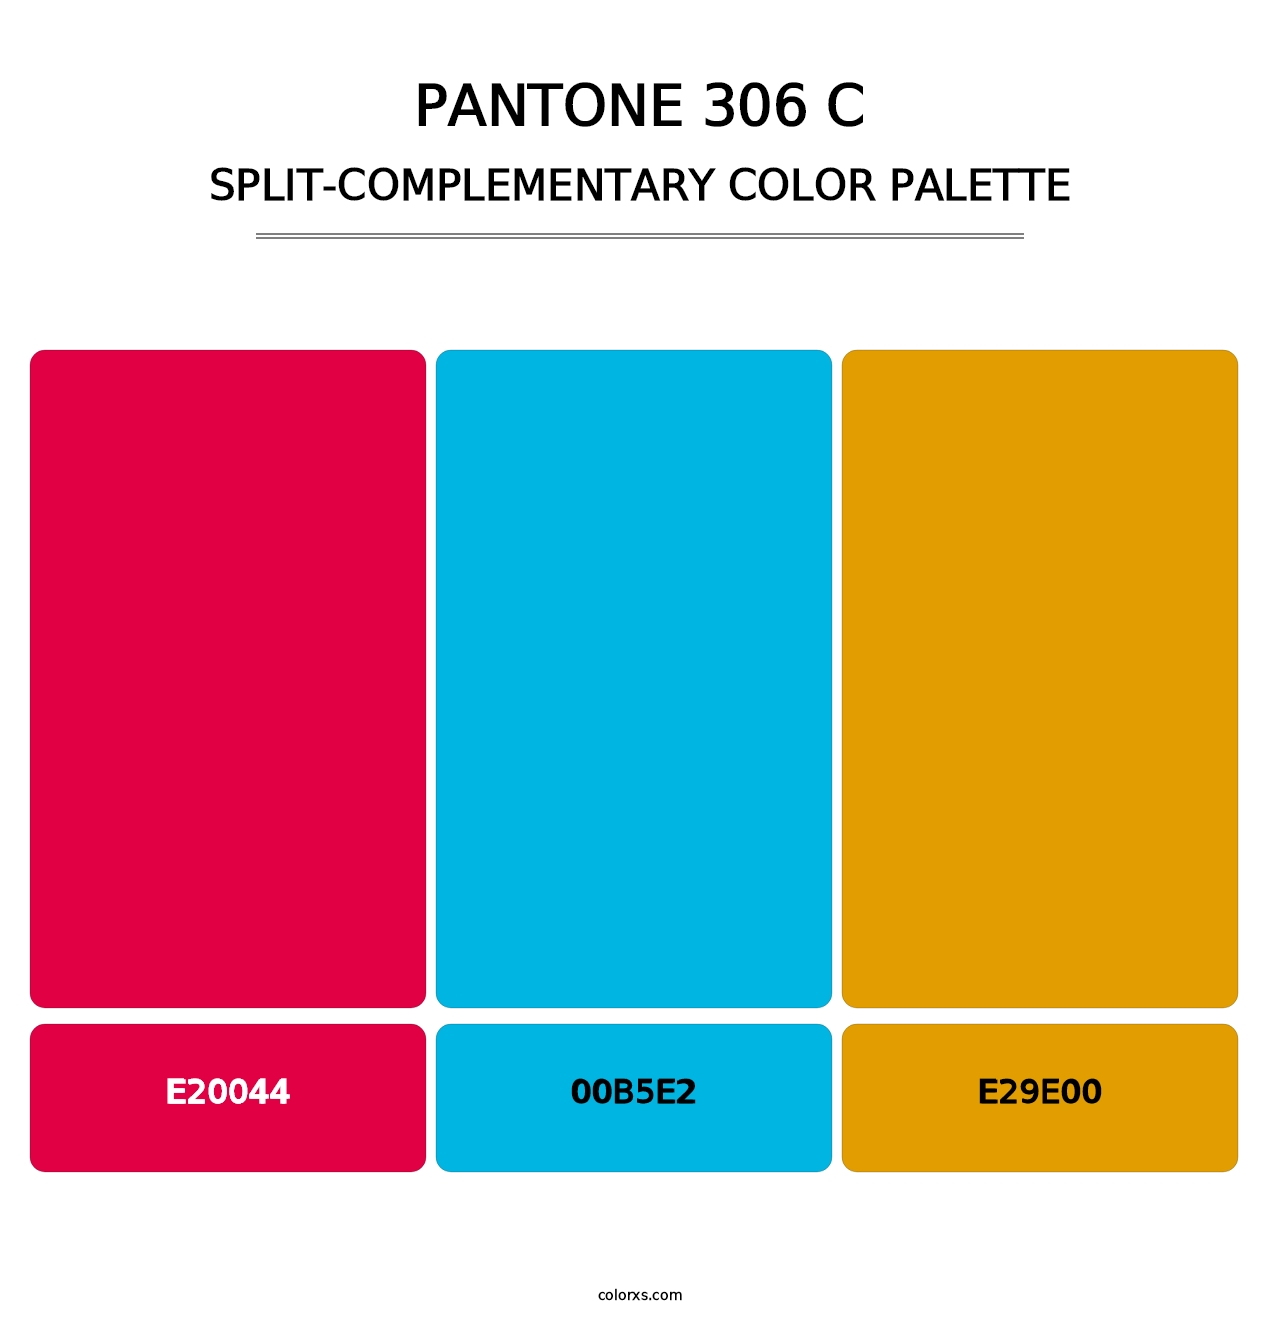 PANTONE 306 C - Split-Complementary Color Palette